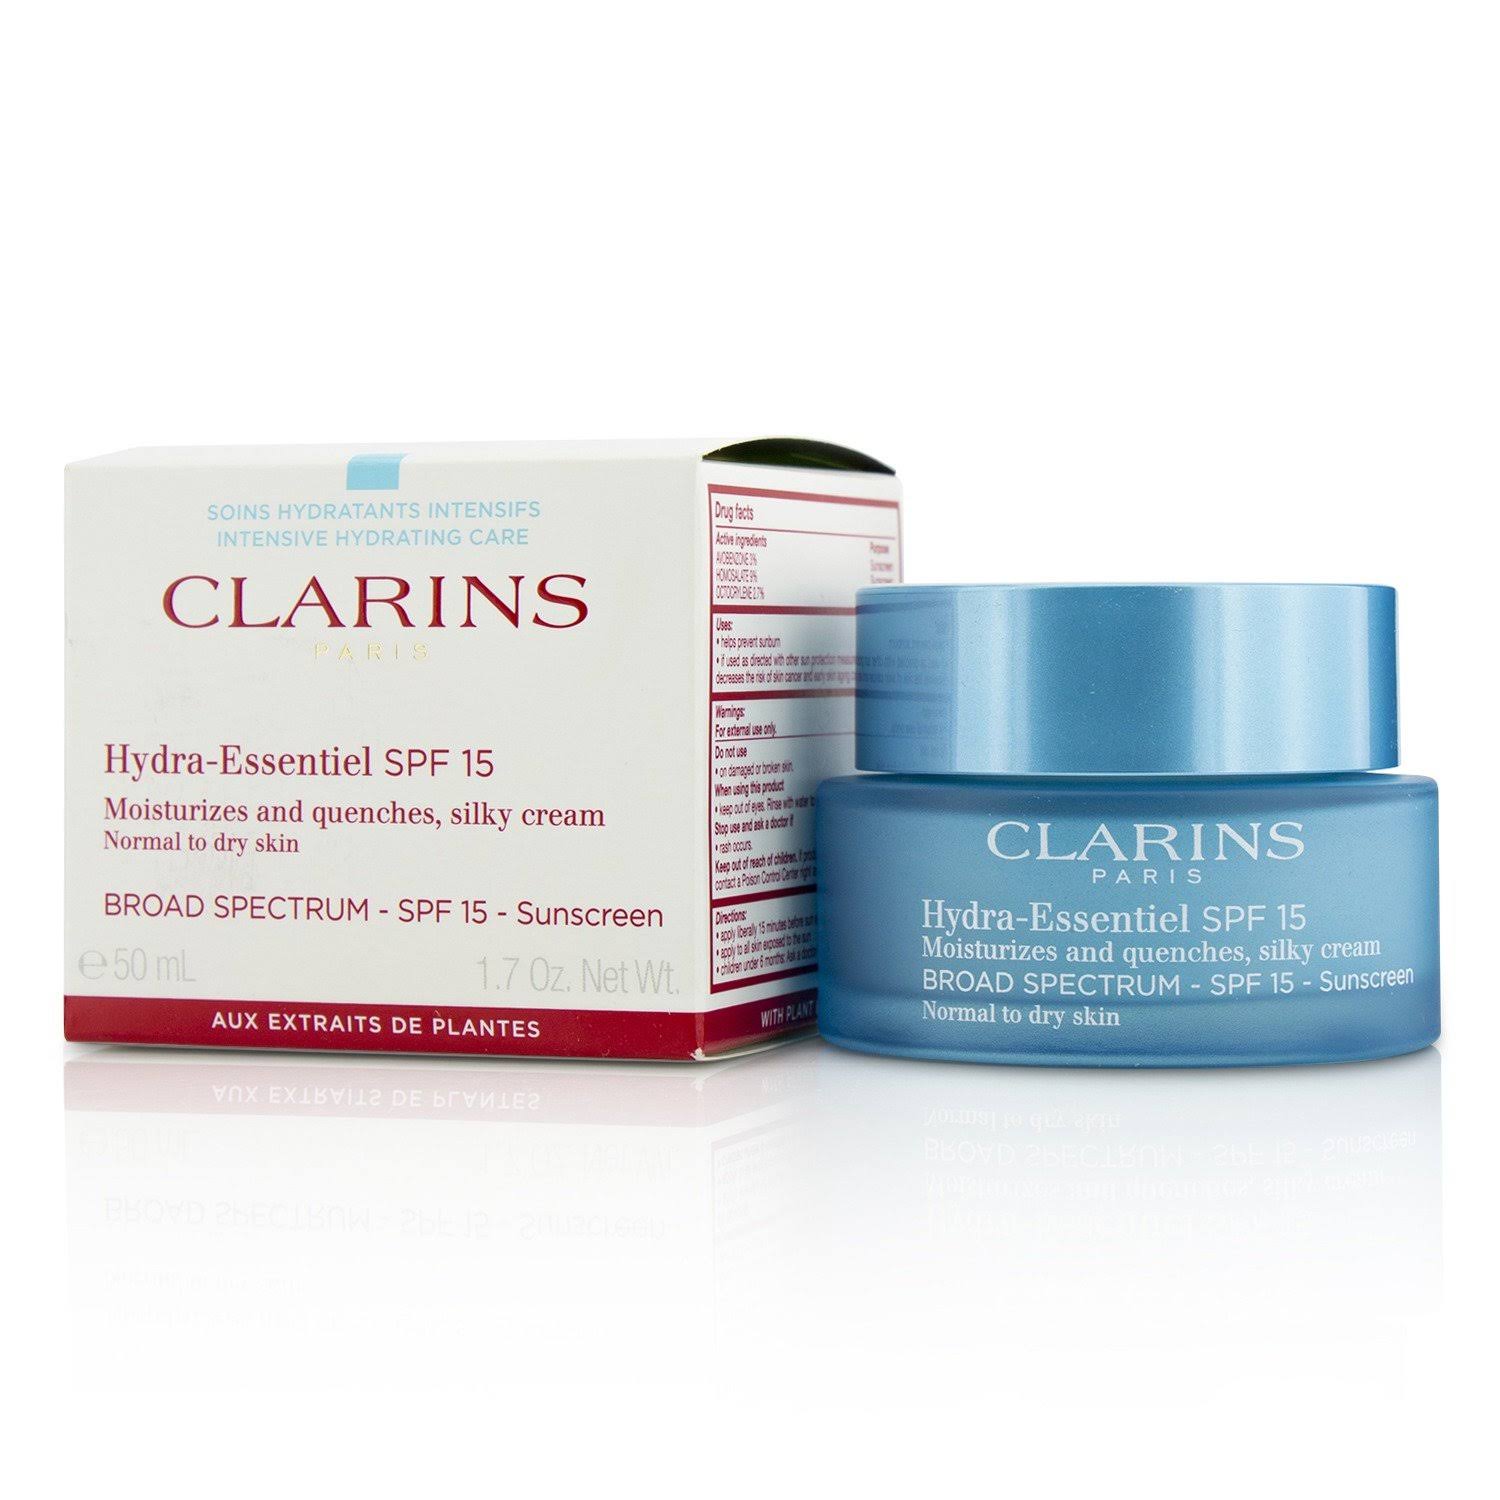 Clarins Hydra-Essentiel Silky Cream SPF 15 - Normal to Dry Skin